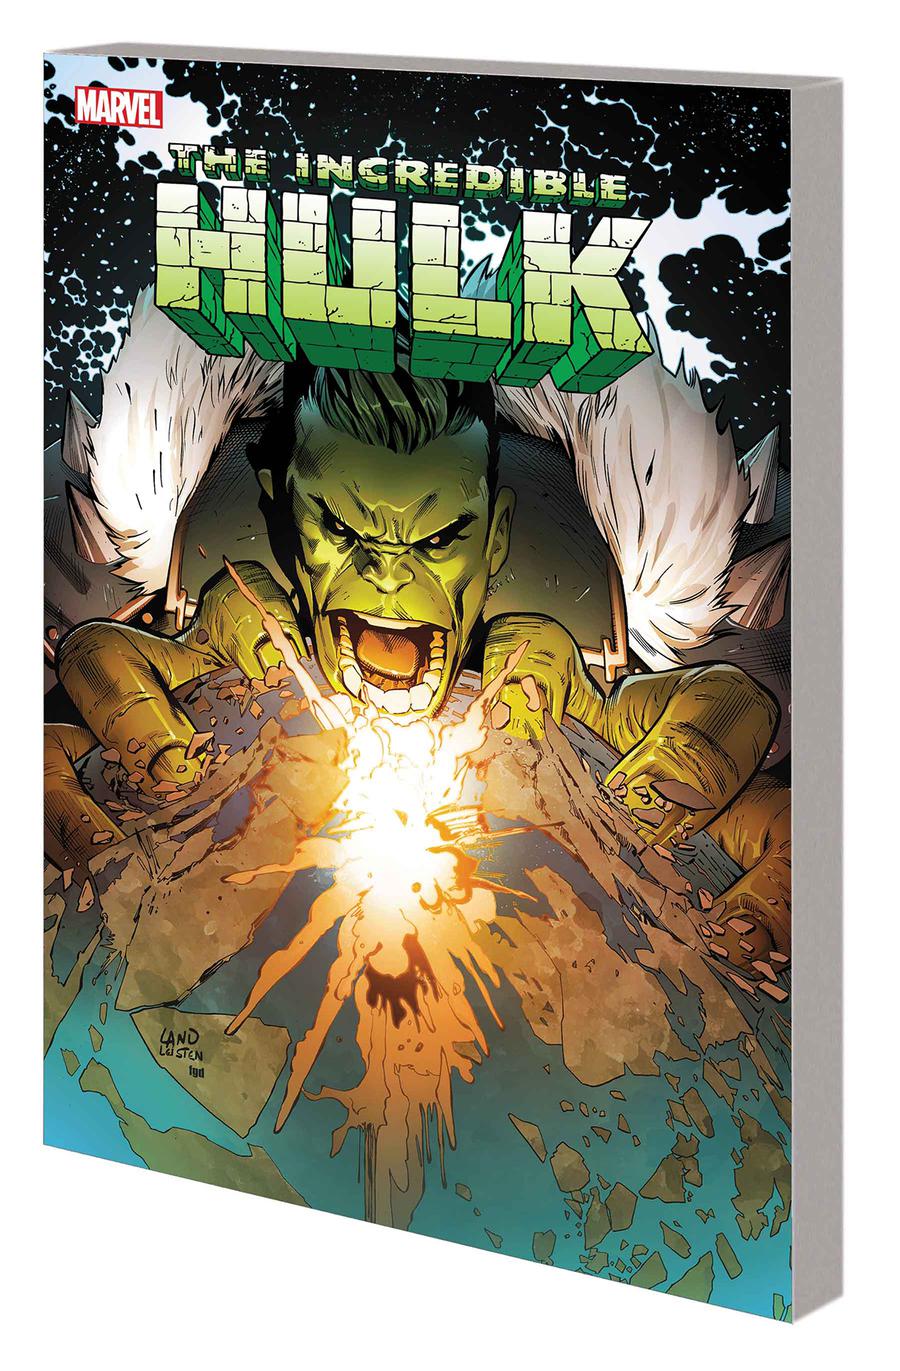 Hulk Return To Planet Hulk TP